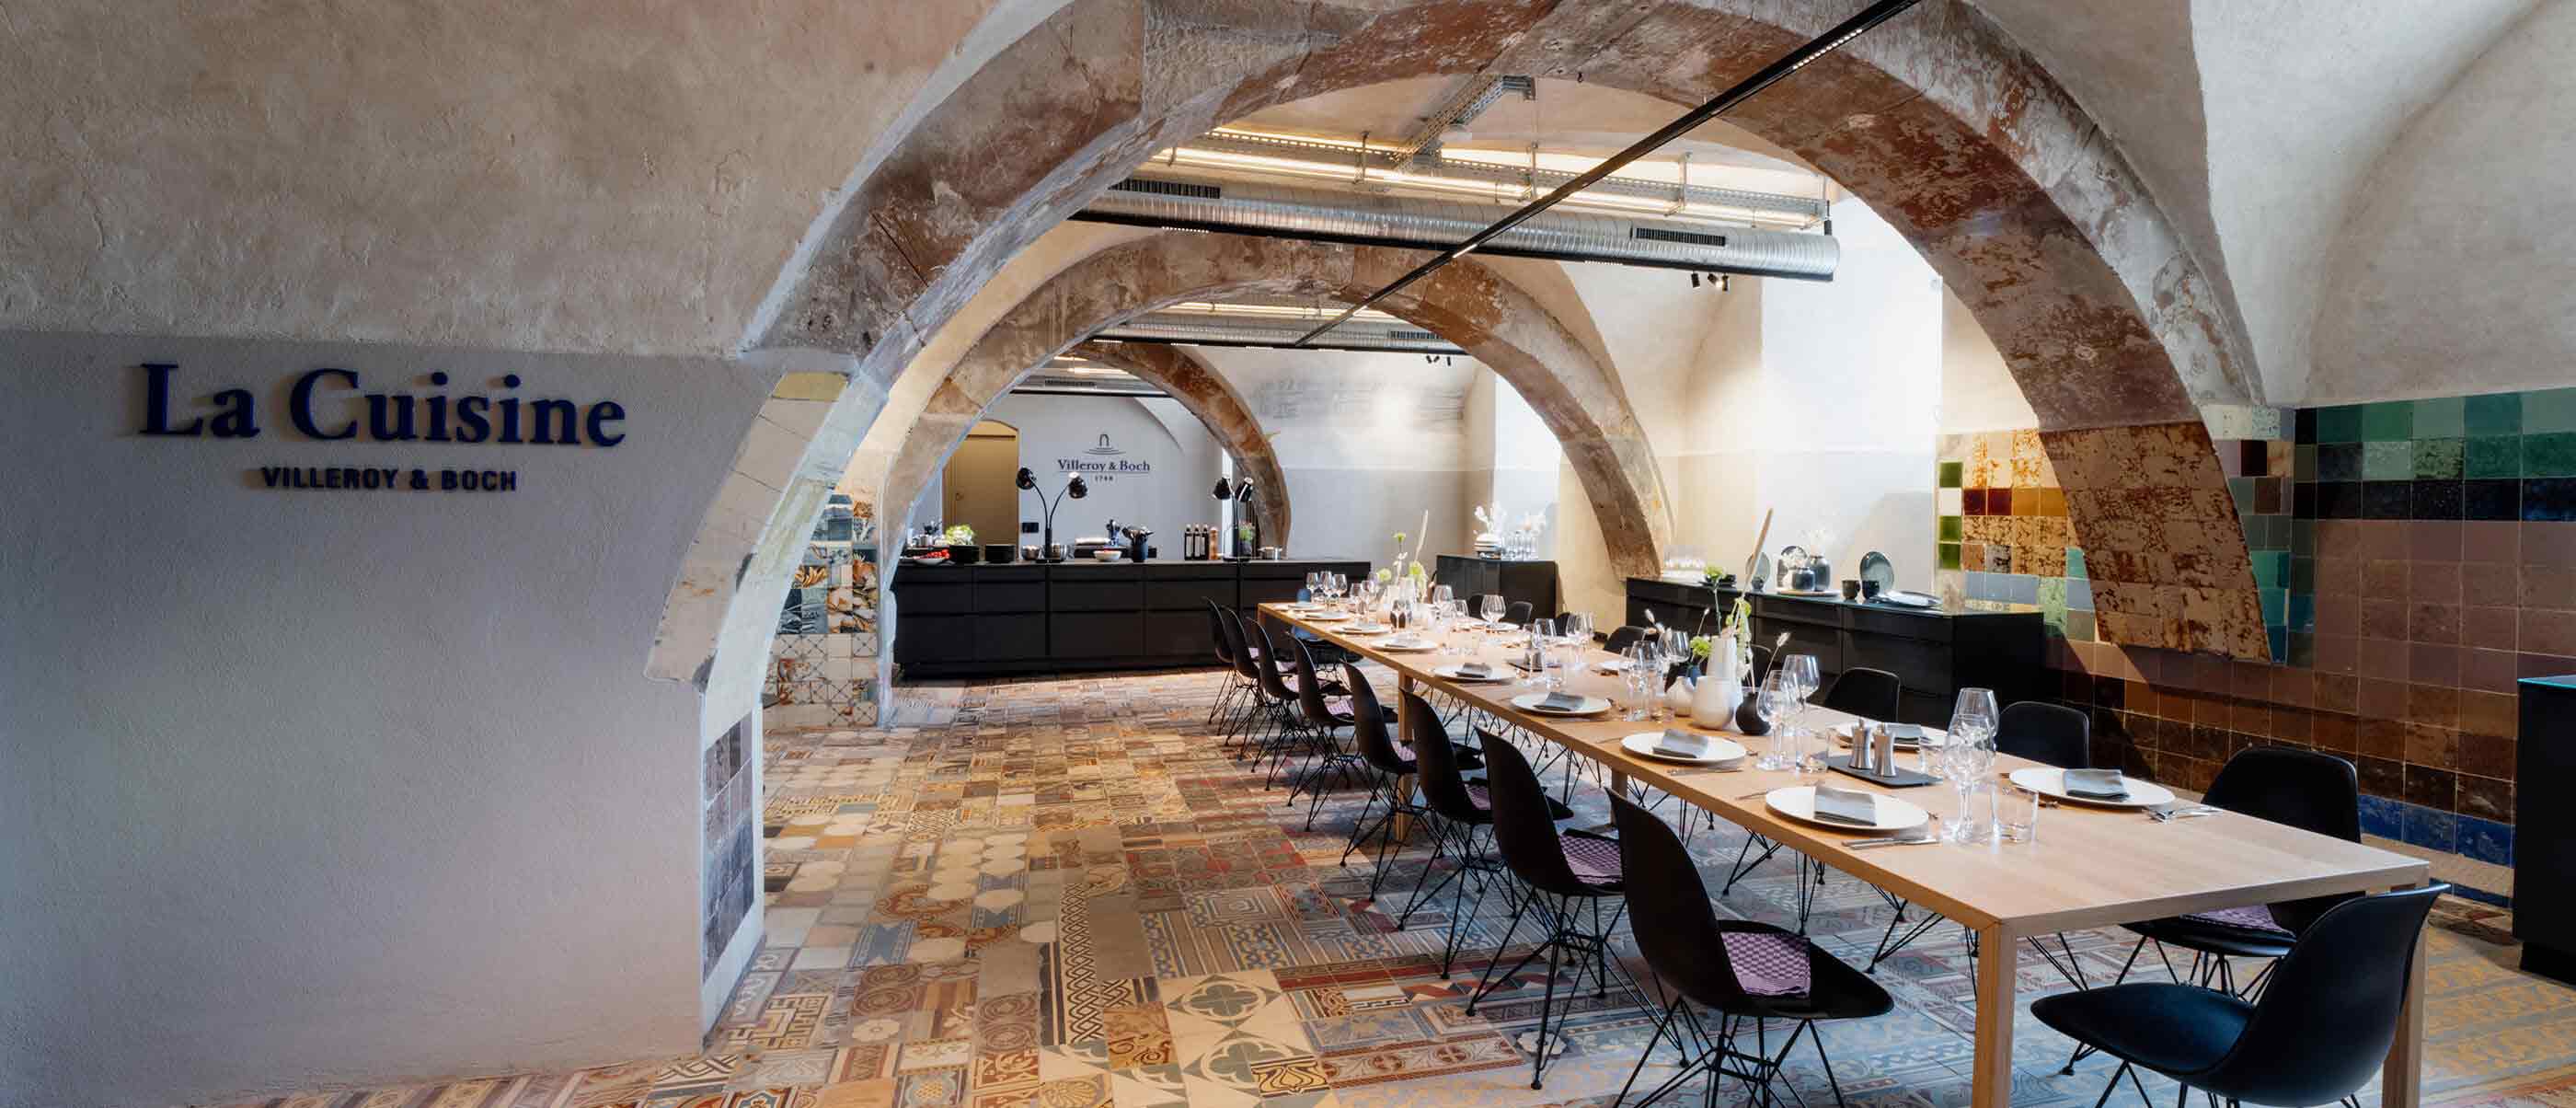 Das Kochstudio liegt im historischen Gewölbekeller, der ehemals als Farblabor genutzt wurde.